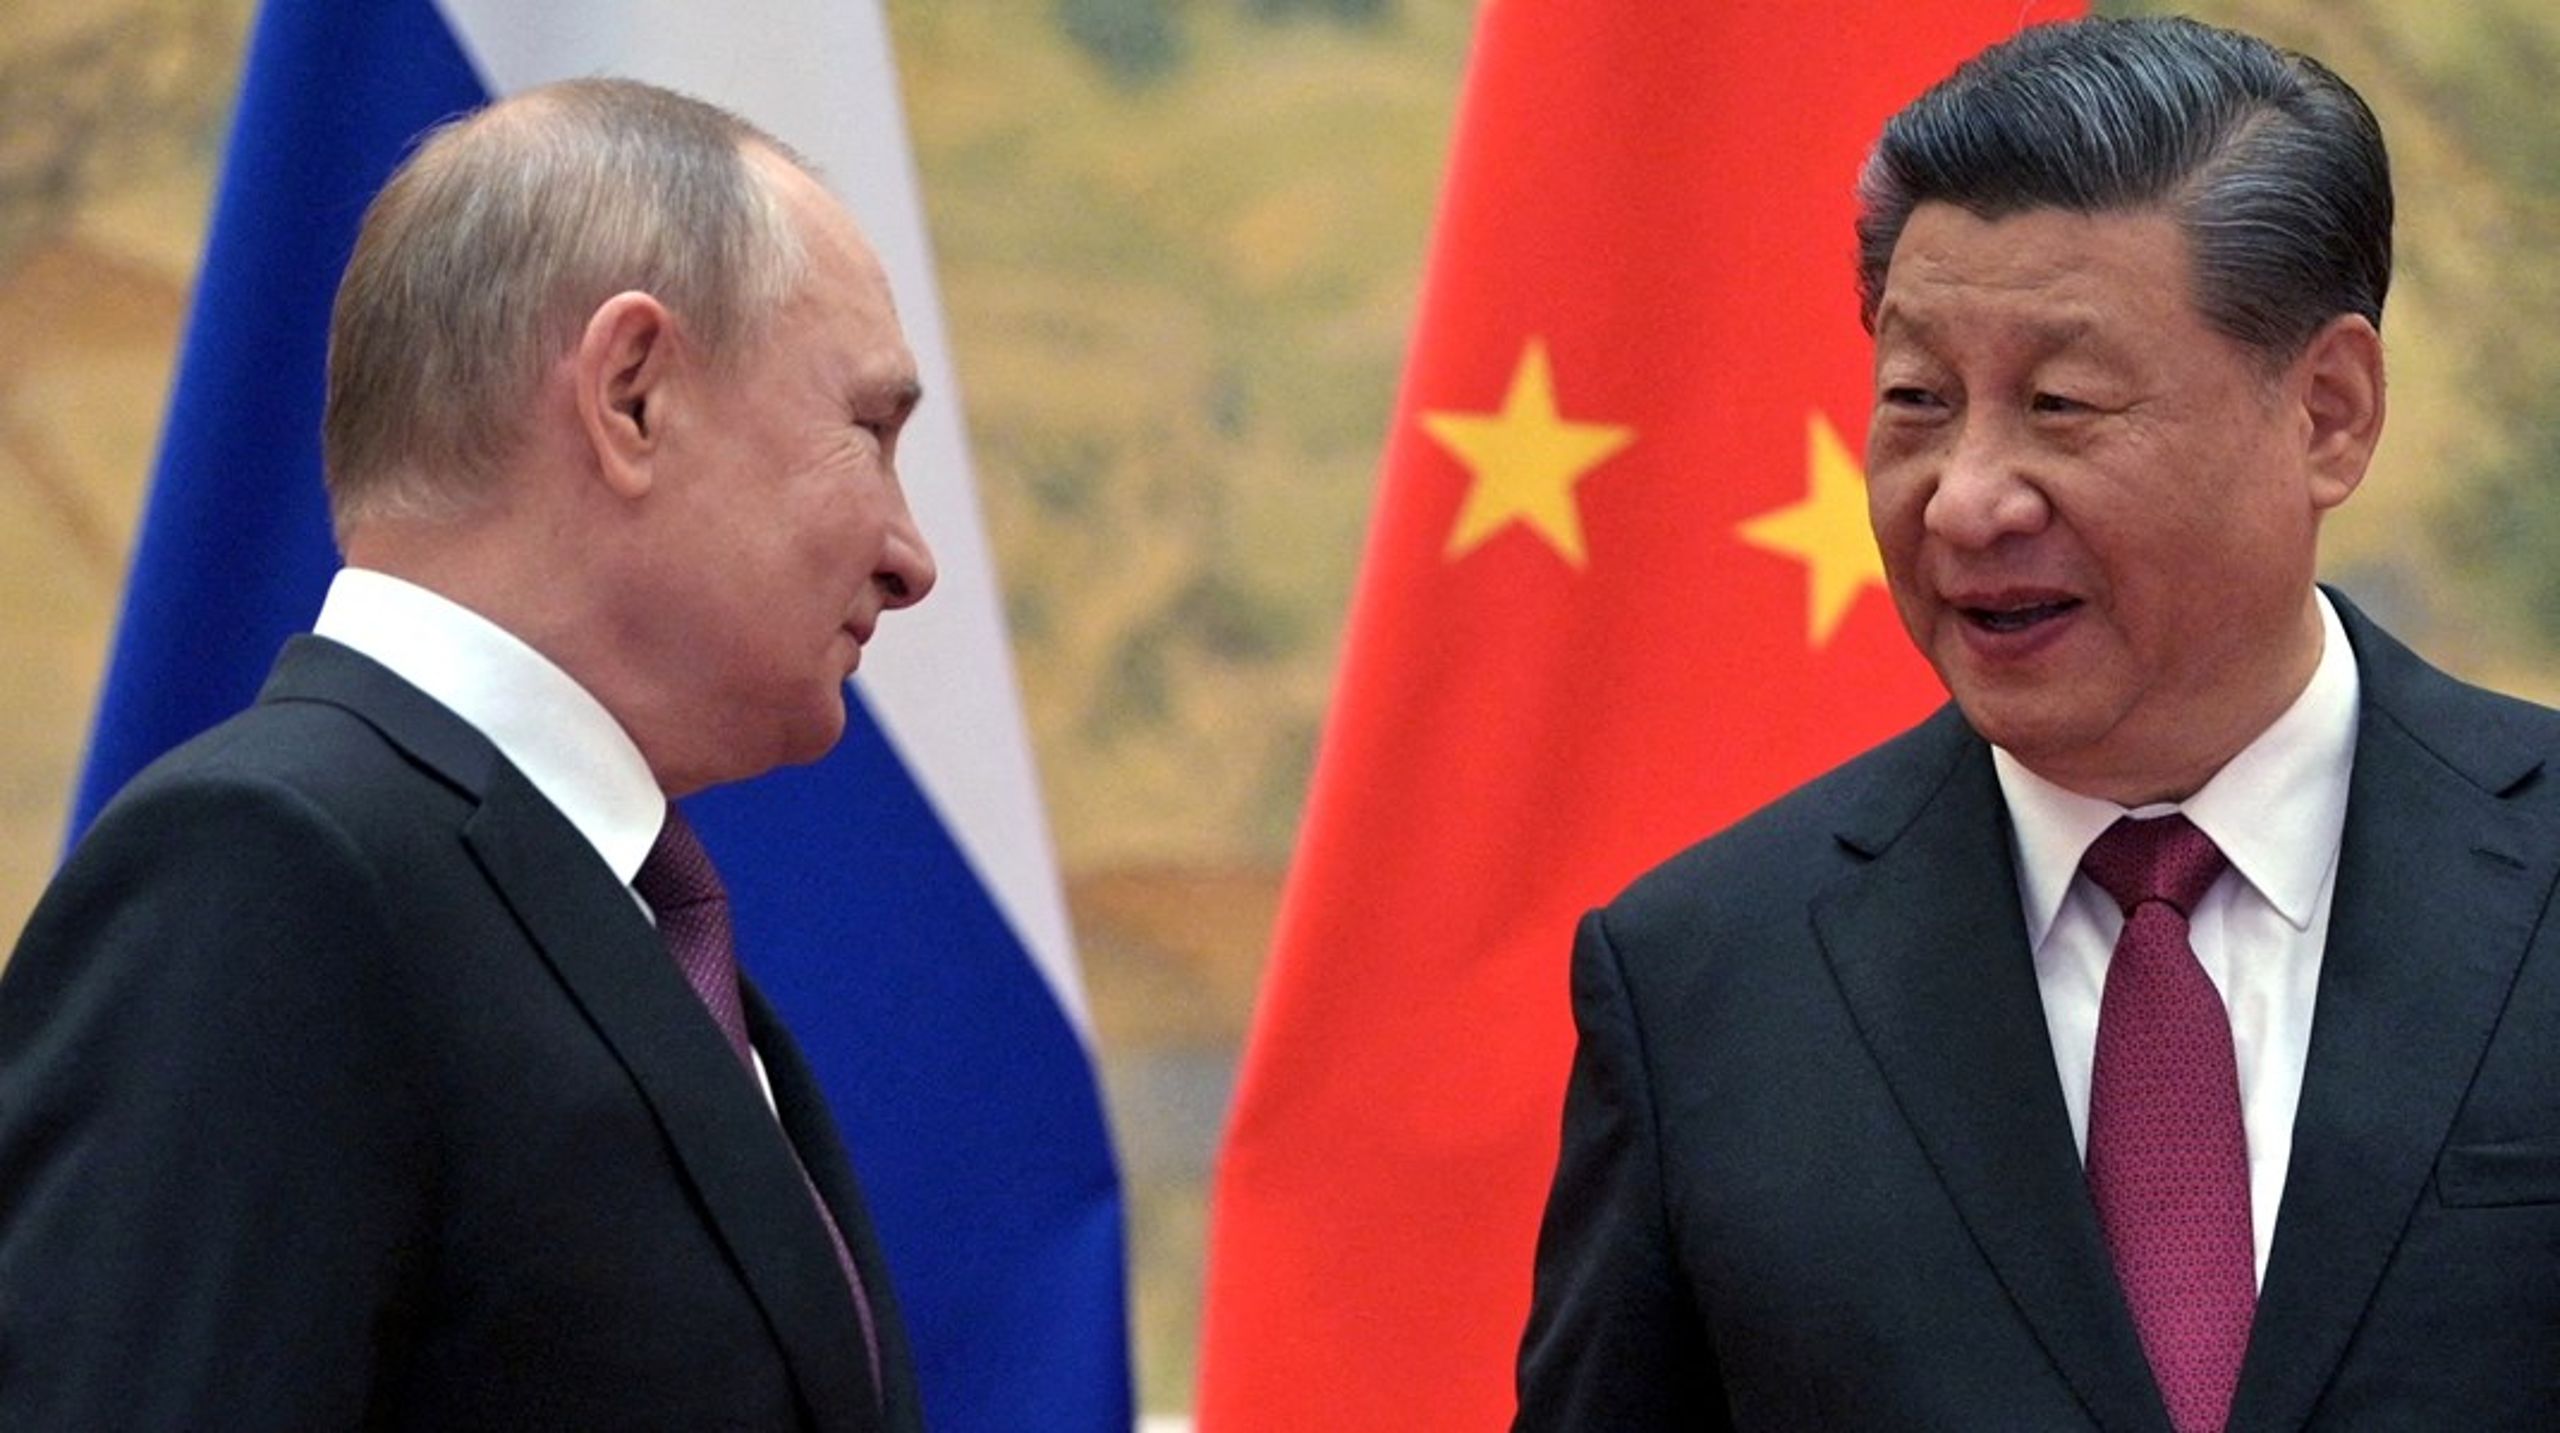 Der er ingen, der har givet en detaljeret og overbevisende forklaring på Xi Jinpings og Putins såkaldte nære forhold, skriver Ulrik T. Jensen.